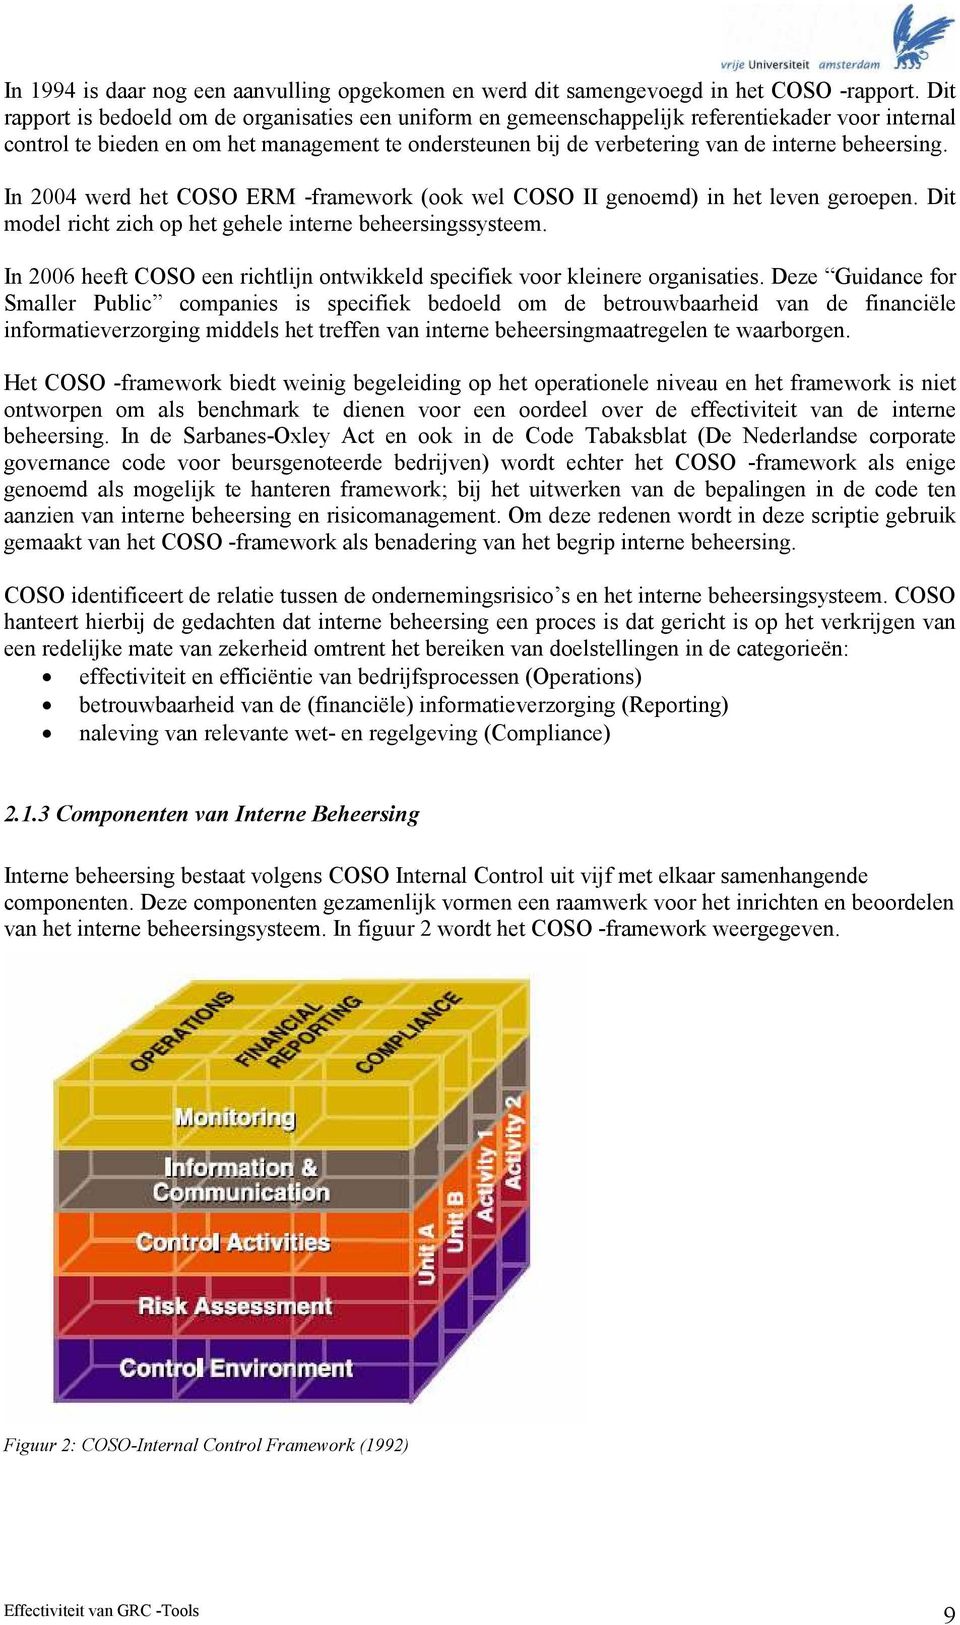 beheersing. In 2004 werd het COSO ERM -framework (ook wel COSO II genoemd) in het leven geroepen. Dit model richt zich op het gehele interne beheersingssysteem.